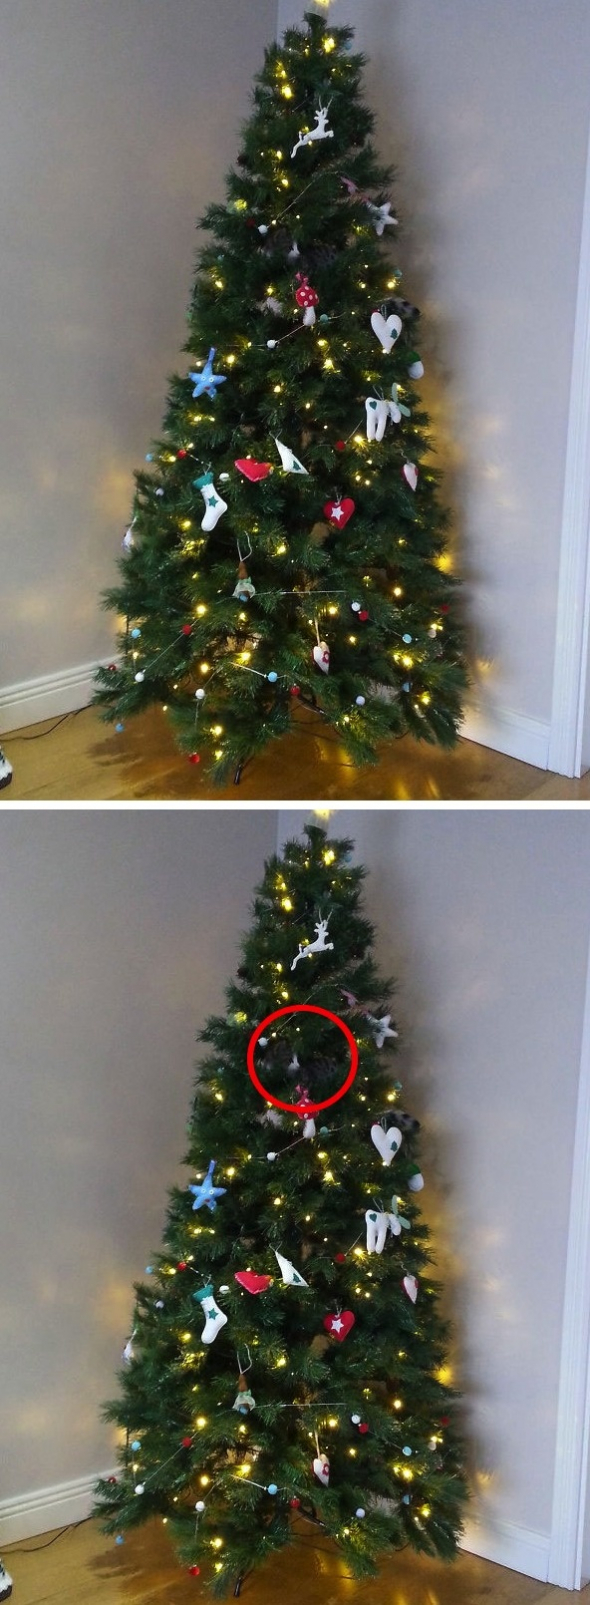 Opravdu dobře ukrytá kočka ve vánočním stromečku